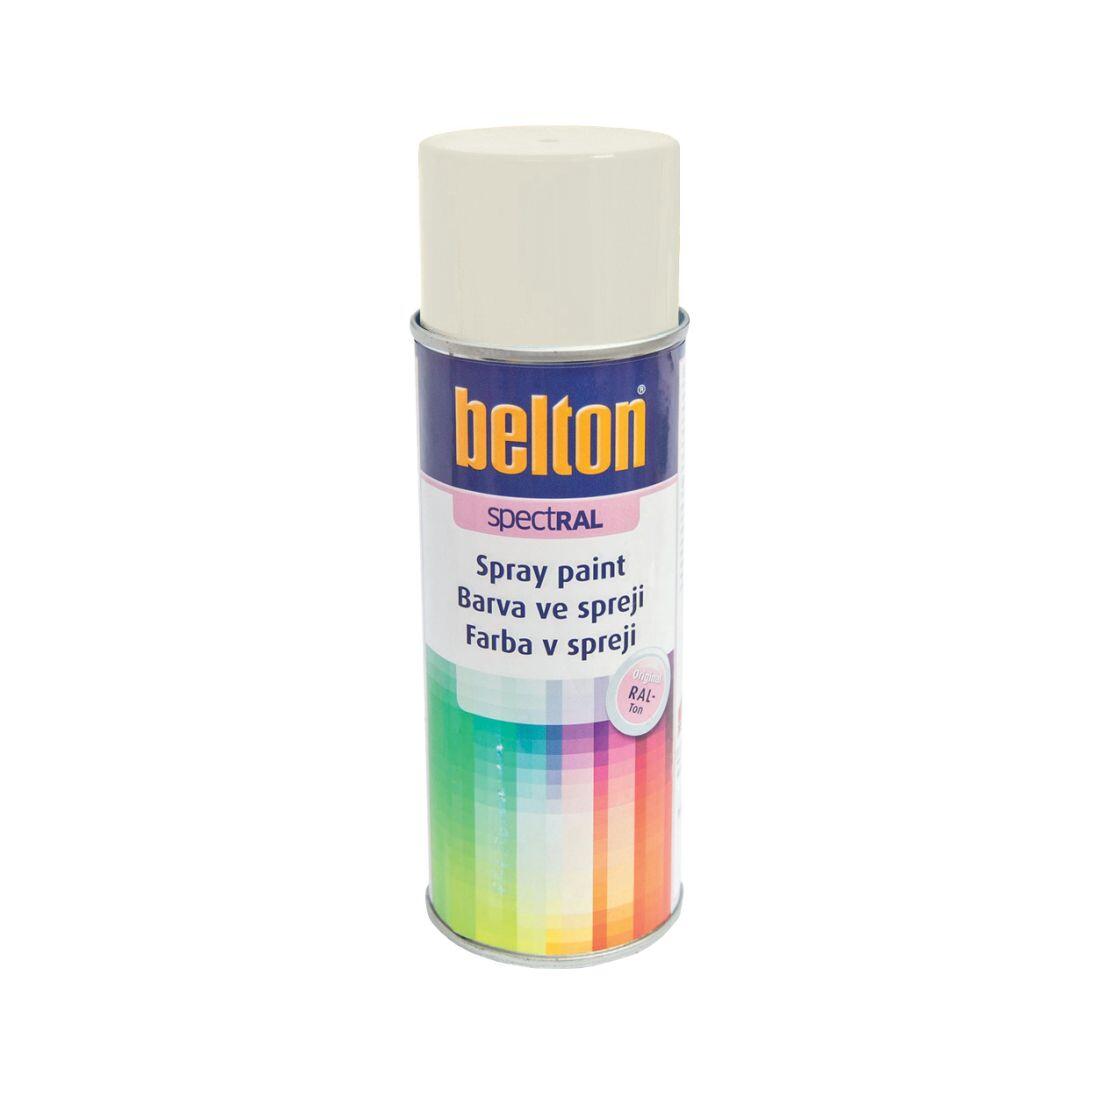 barva ve spreji BELTON RAL 9010, 400ml BÍ 0.31 Kg MAXMIX Sklad14 825130 14